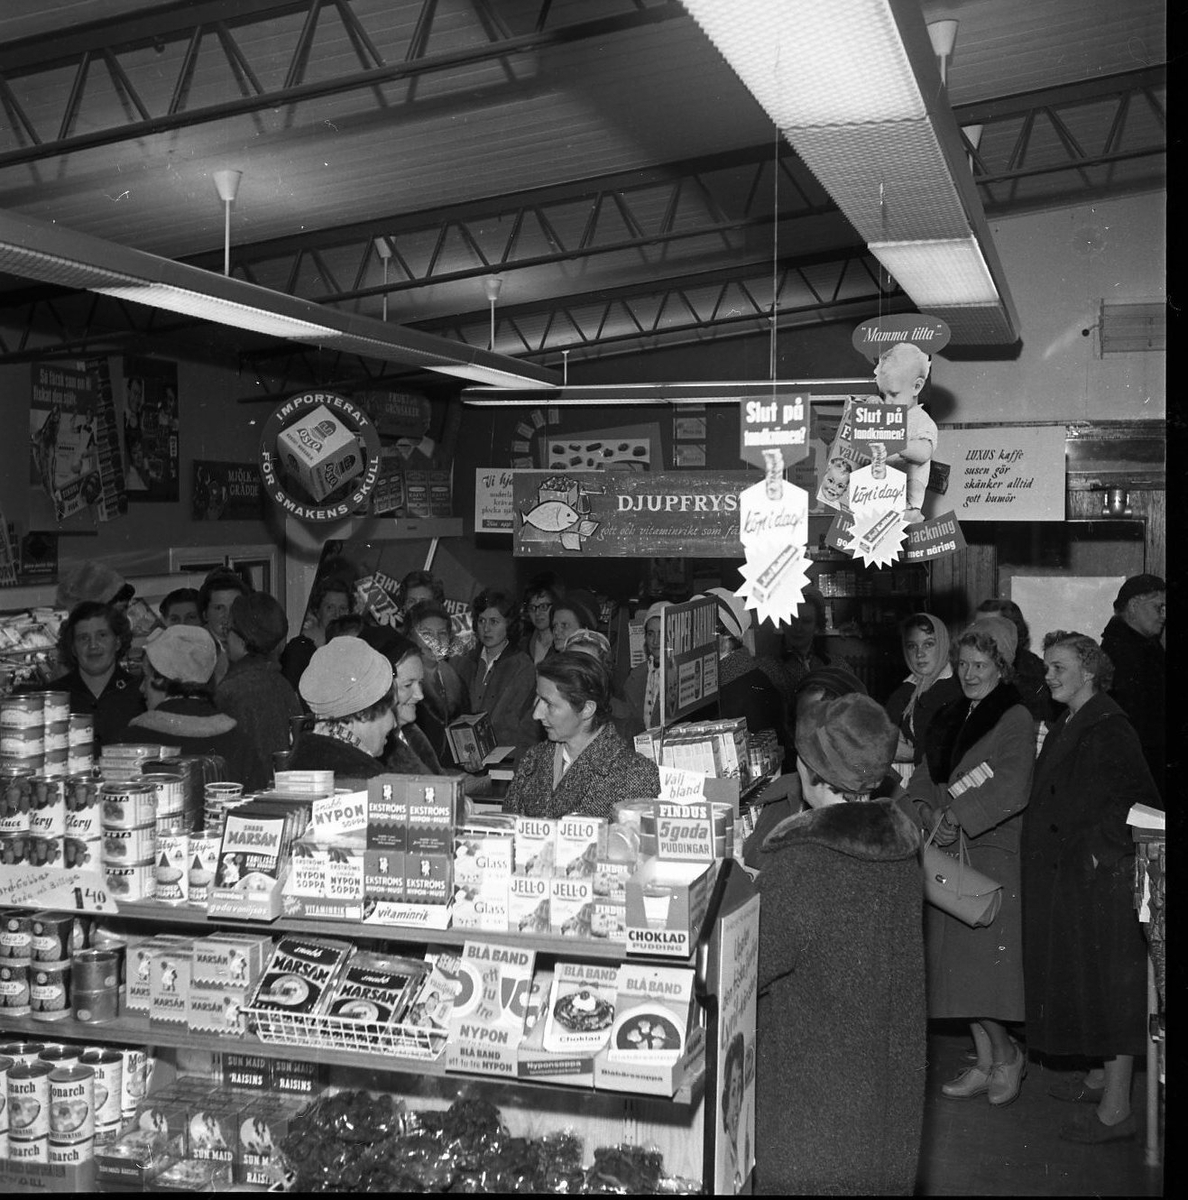 Kvinnor står packade i en mataffär. Från taket hänger reklam för mat och tandkräm. På hyllorna står matvaror med varumärken som Ekströms, Blå band och Jell-o.